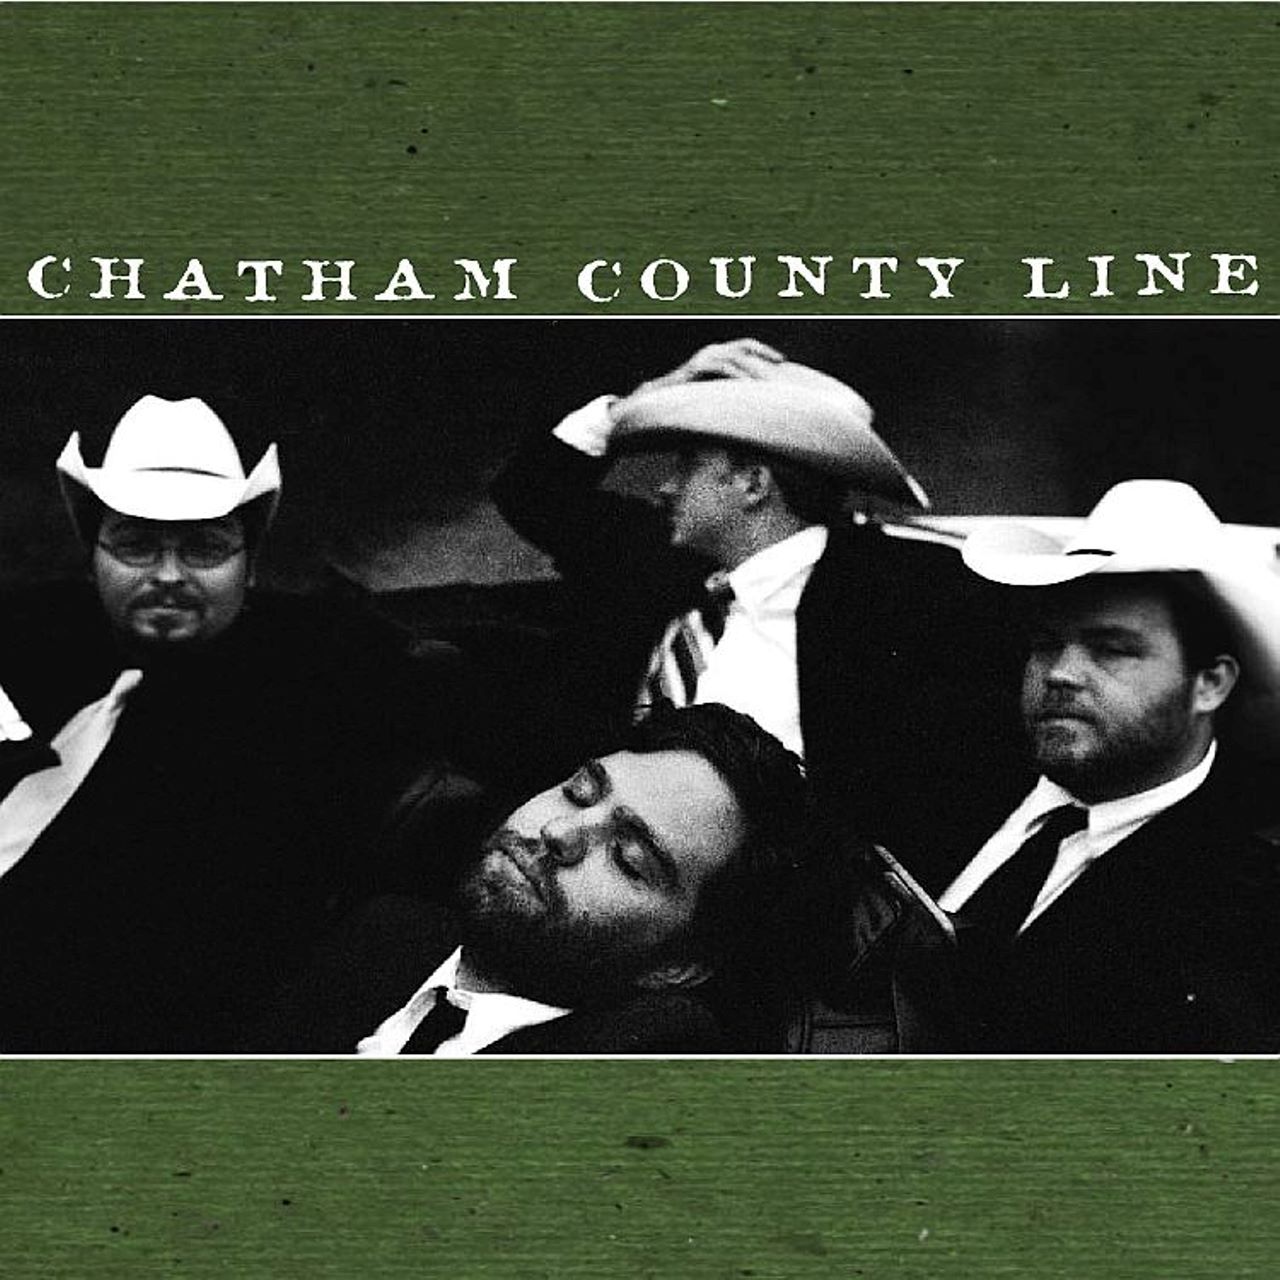 Chatham County Line - Chatham County Line cover album